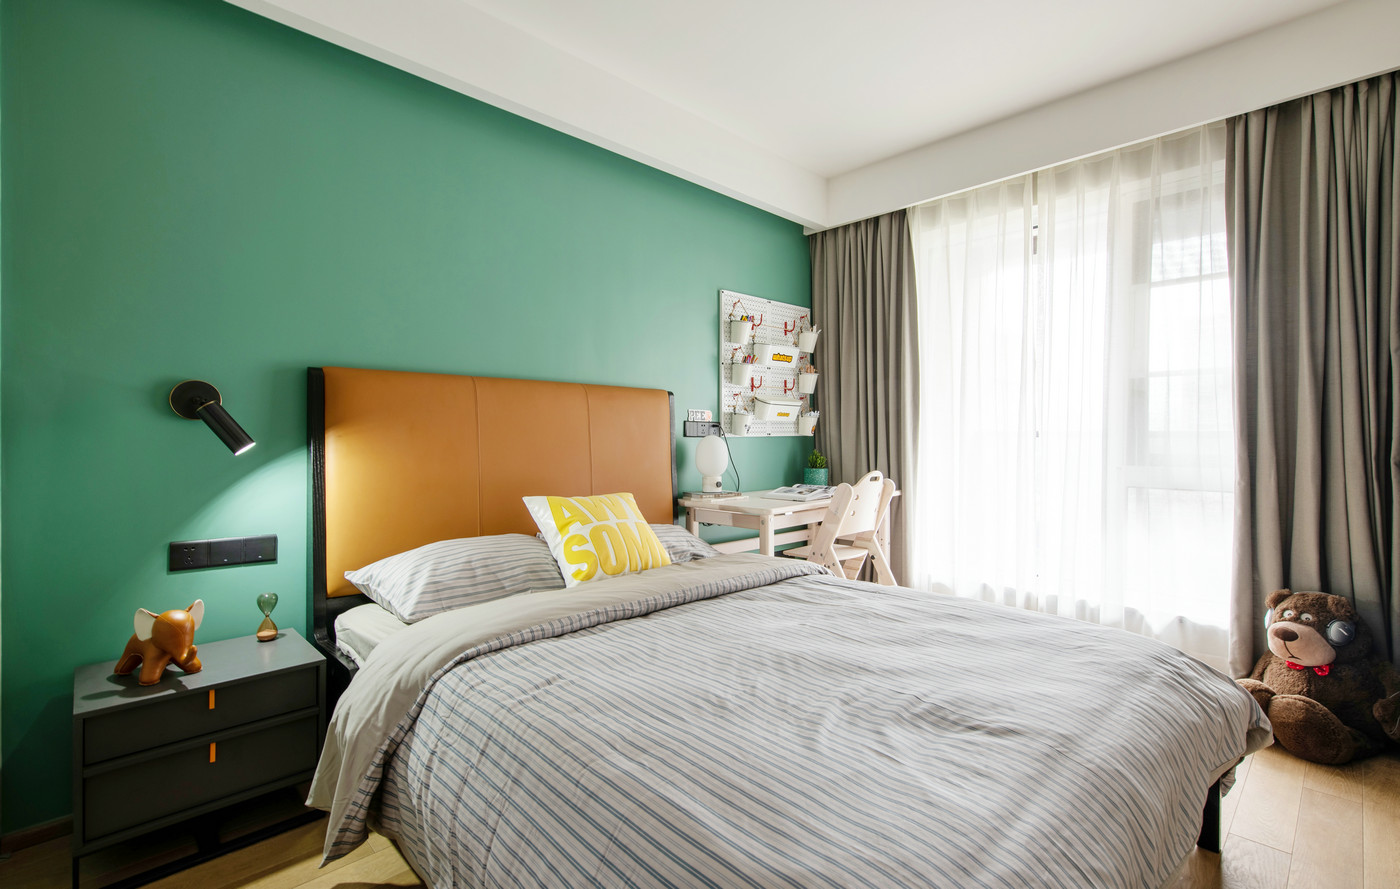 浅绿色背景墙充满文艺气息，搭配焦糖色床头充满戏剧意味，视觉上拥有绝佳体验。